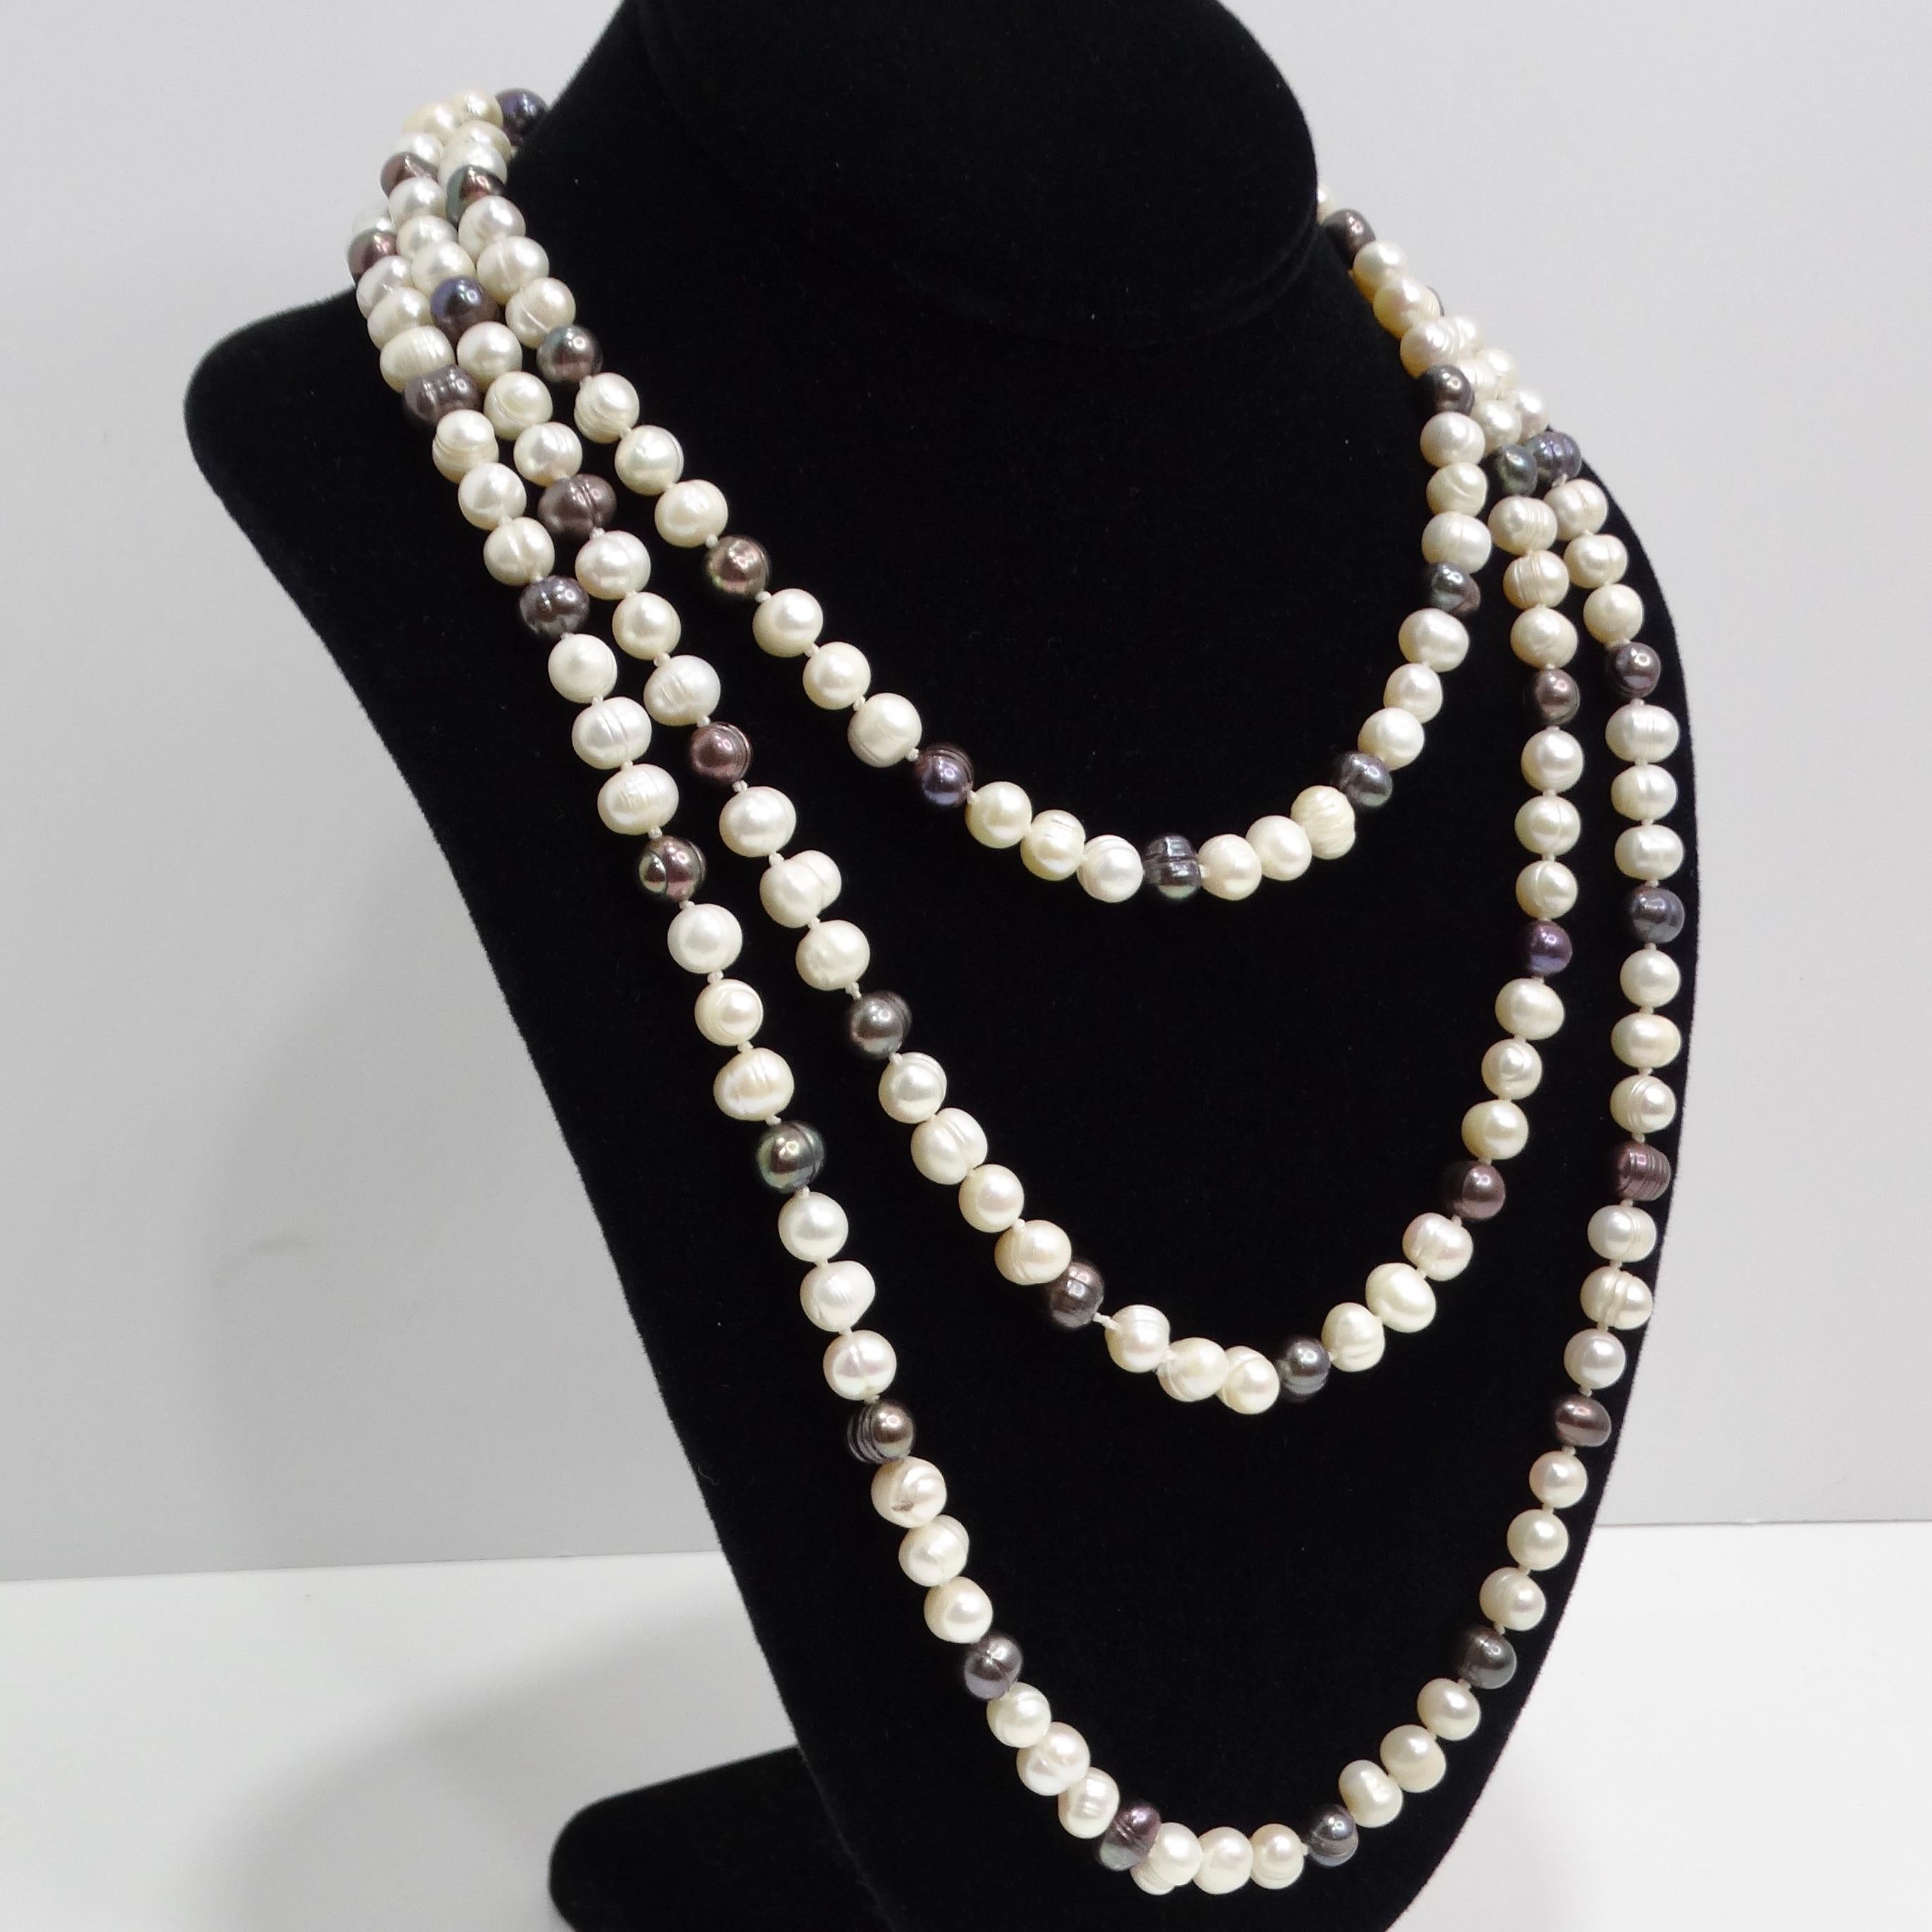 Wir präsentieren die 1960er Süßwasserperlenkette, eine extralange Perlenkette im Vintage-Stil, die Opulenz und Luxus ausstrahlt. Dieses atemberaubende Schmuckstück besticht durch eine Kombination aus schwarzen und weißen Süßwasserperlen, die jeweils